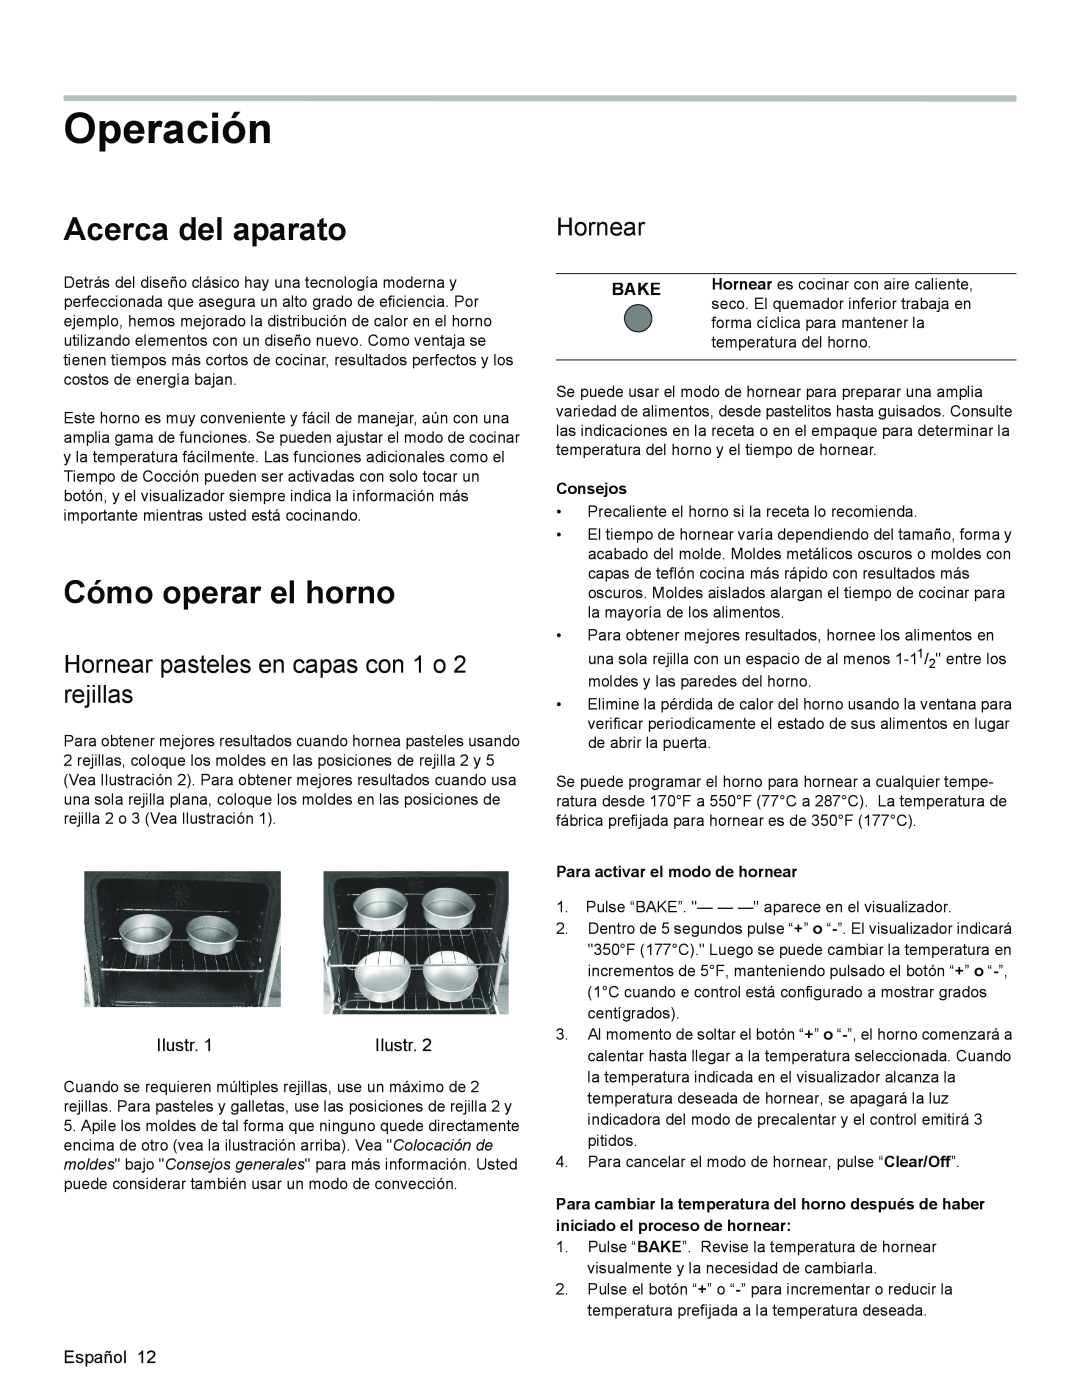 Bosch Appliances HGS3053UC manual Operación, Acerca del aparato, Cómo operar el horno, Hornear, Bake, Consejos 